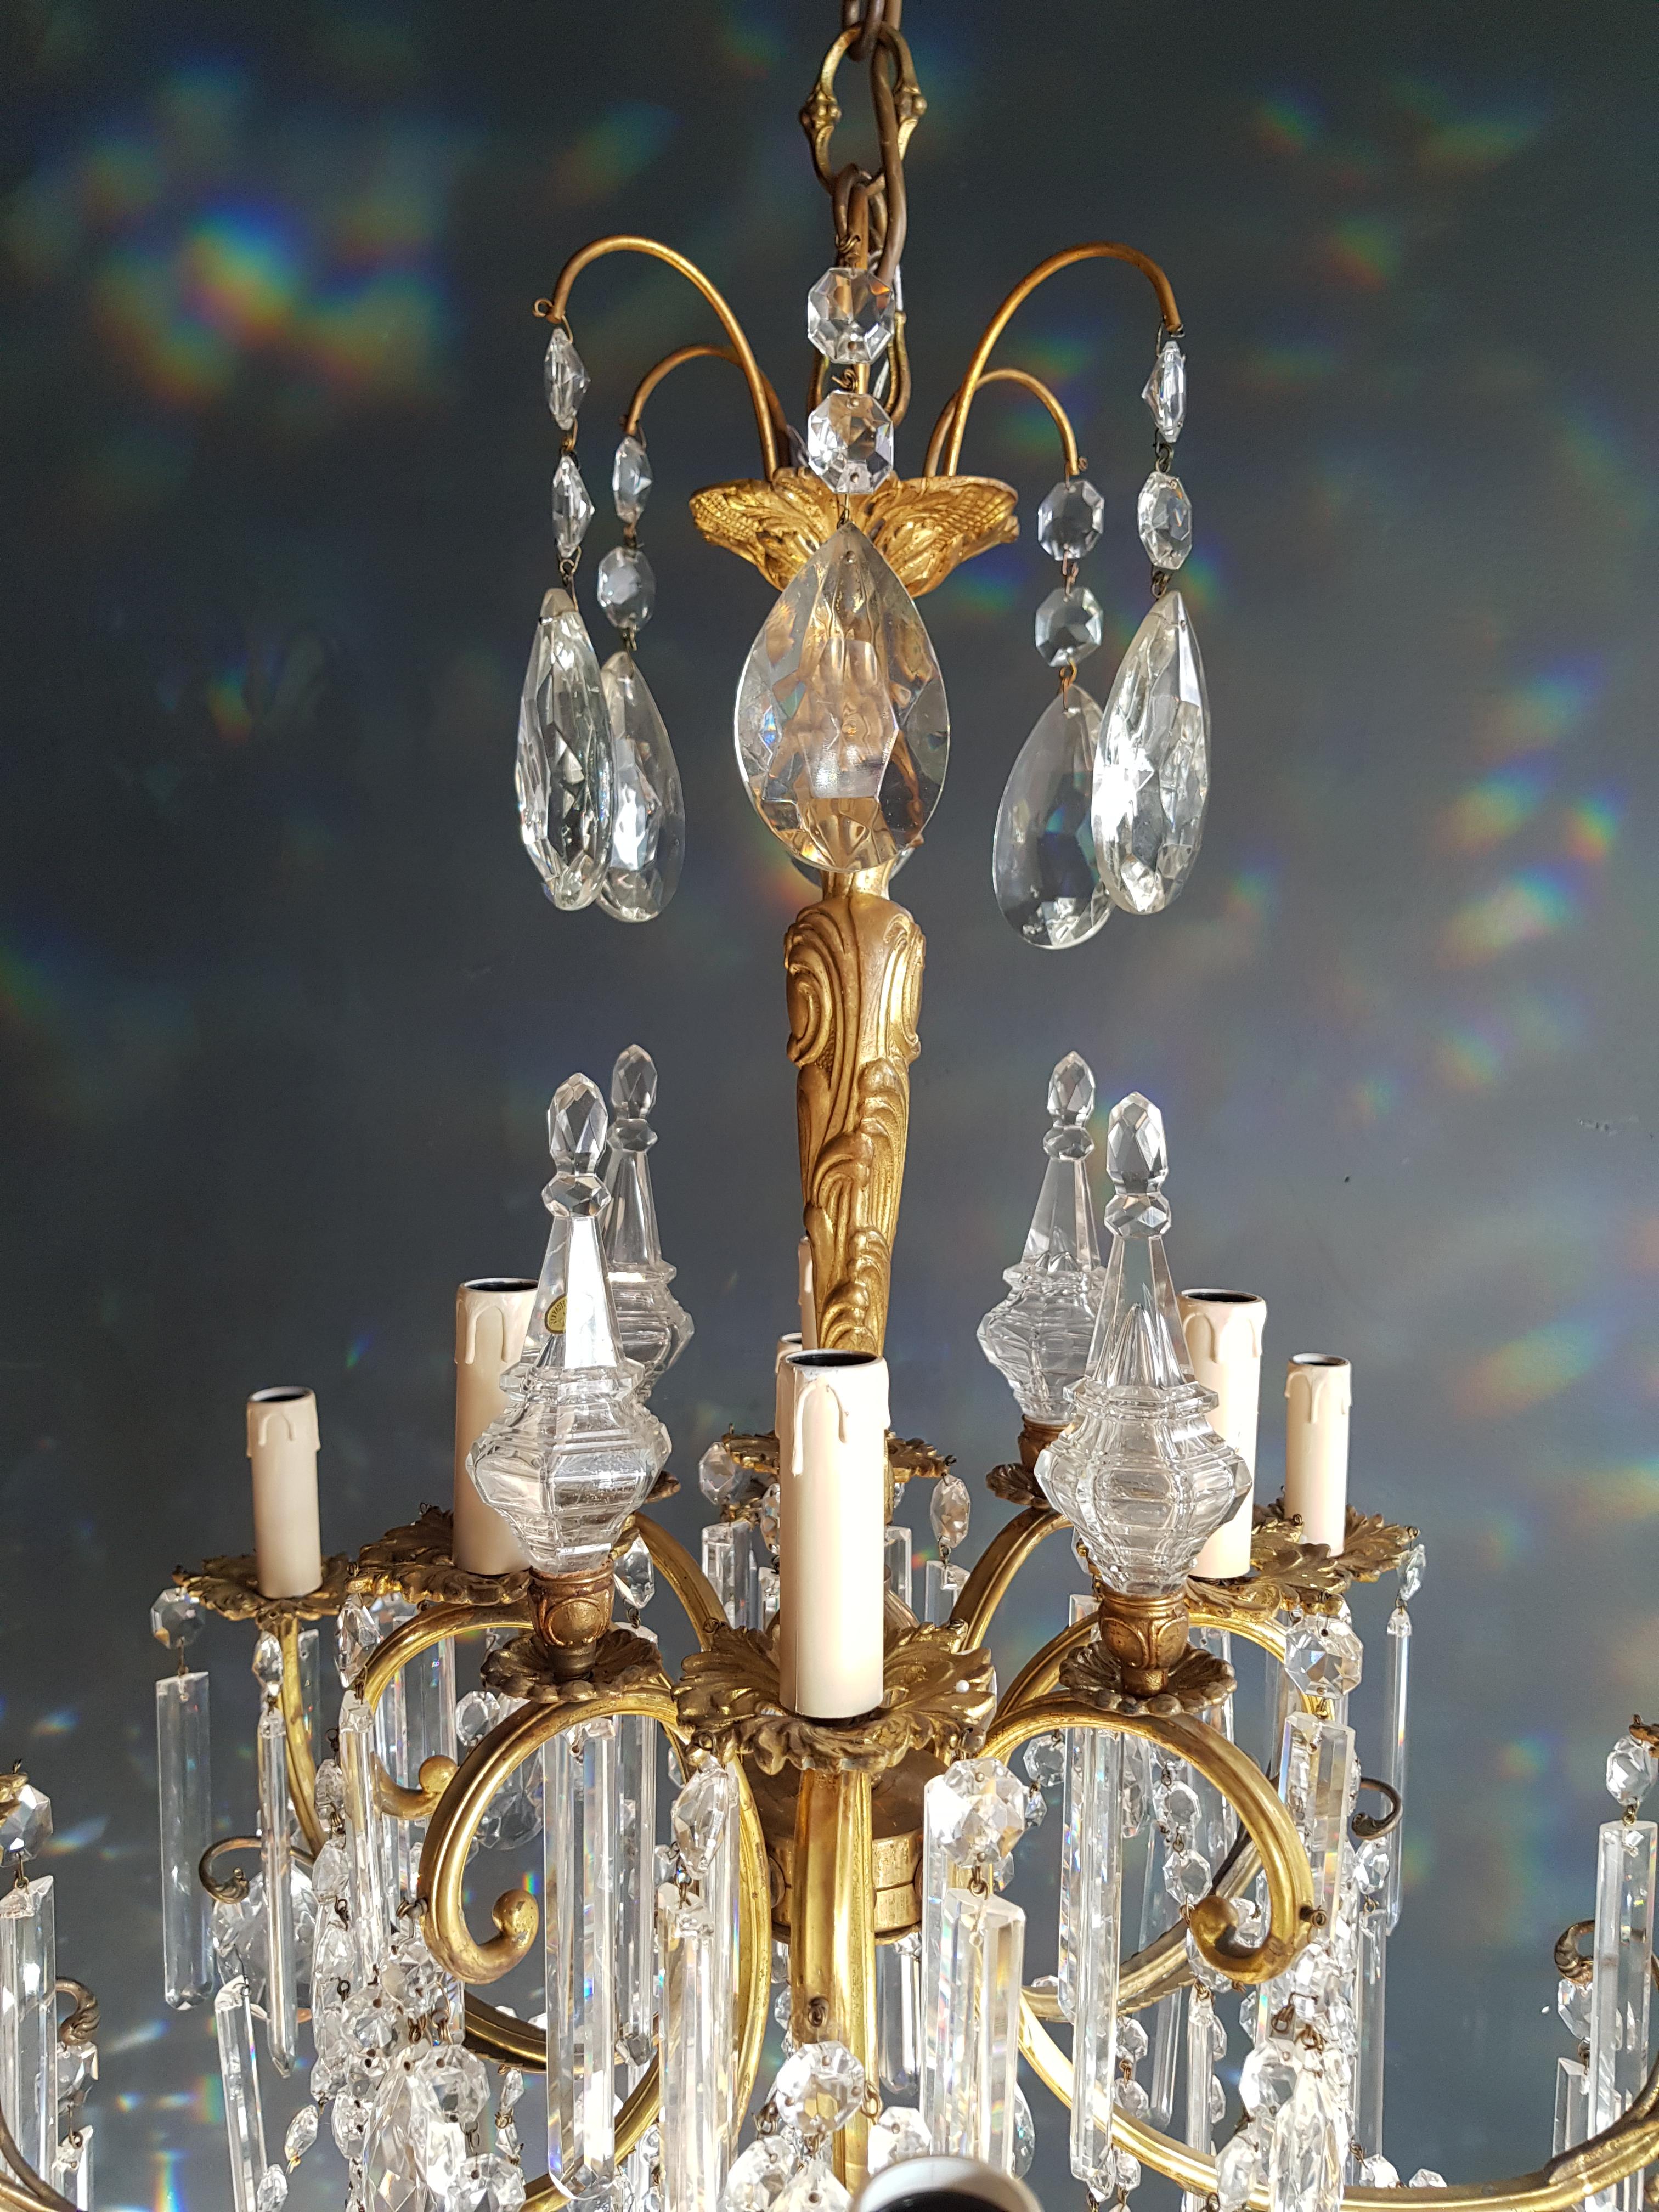 Gilded Crystal Bohemia Chandelier Antique Ceiling Lamp Lustre Art Nouveau Candel 3